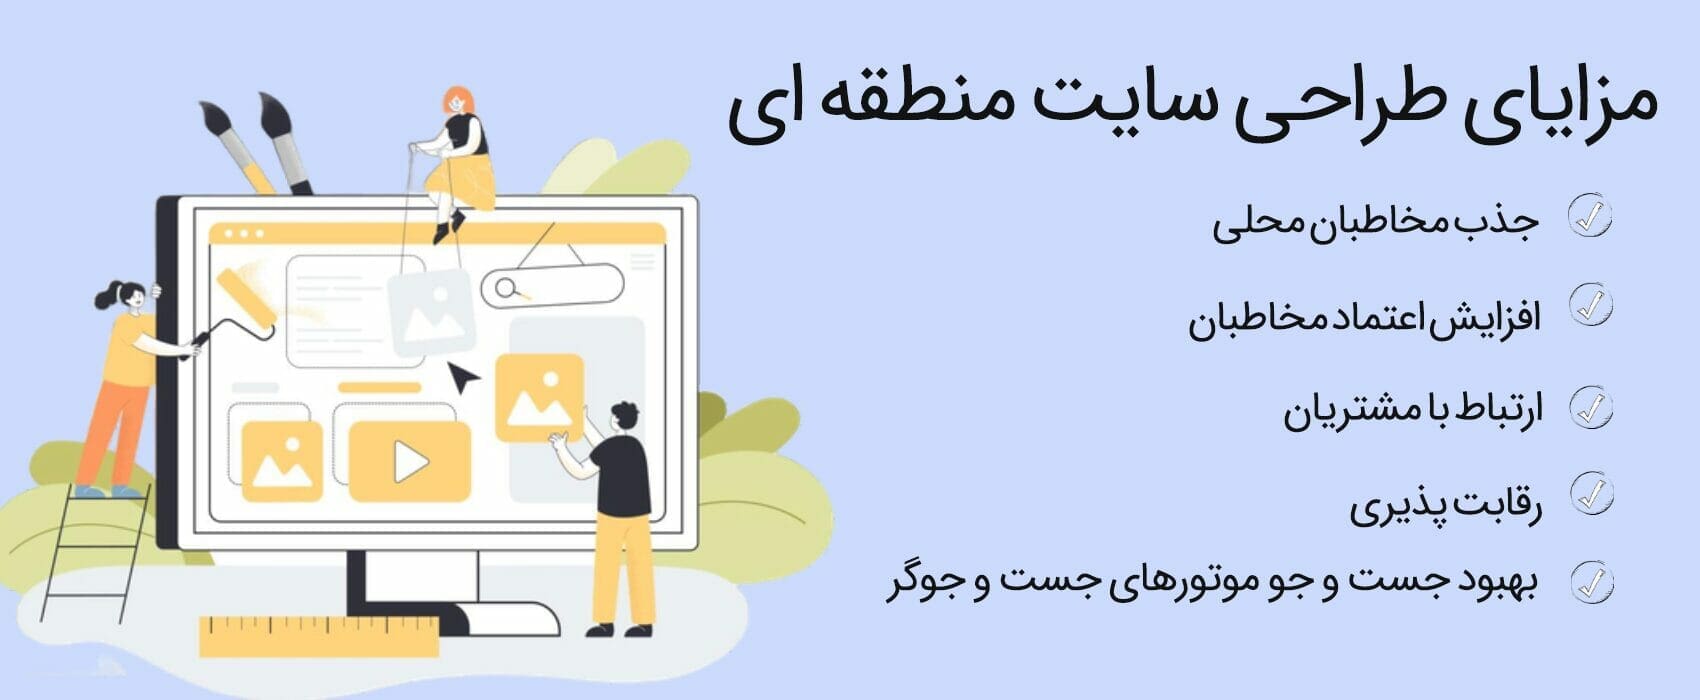 طراحی سایت در مهرشهر کرج، طراحی سایت در مهرشهر، سئو سایت در مهرشهر